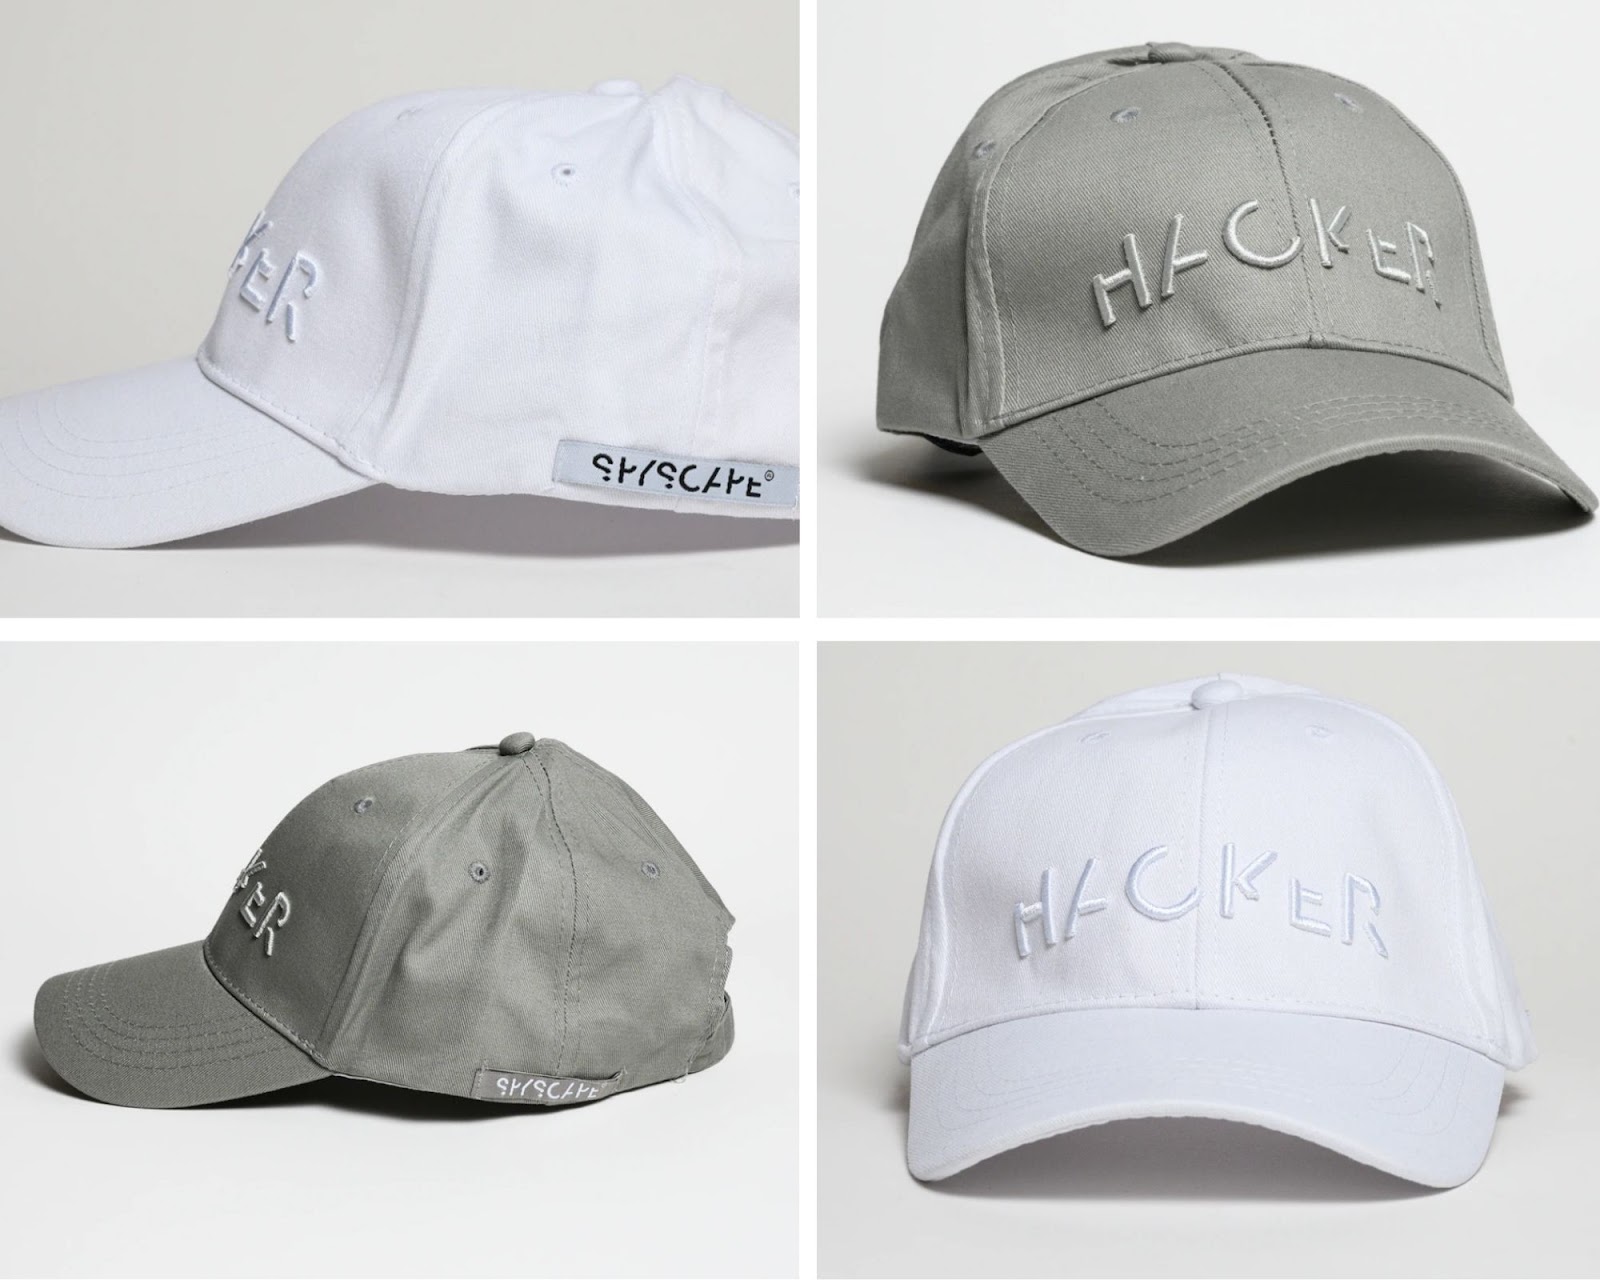 SPYSCAPE Hacker hats